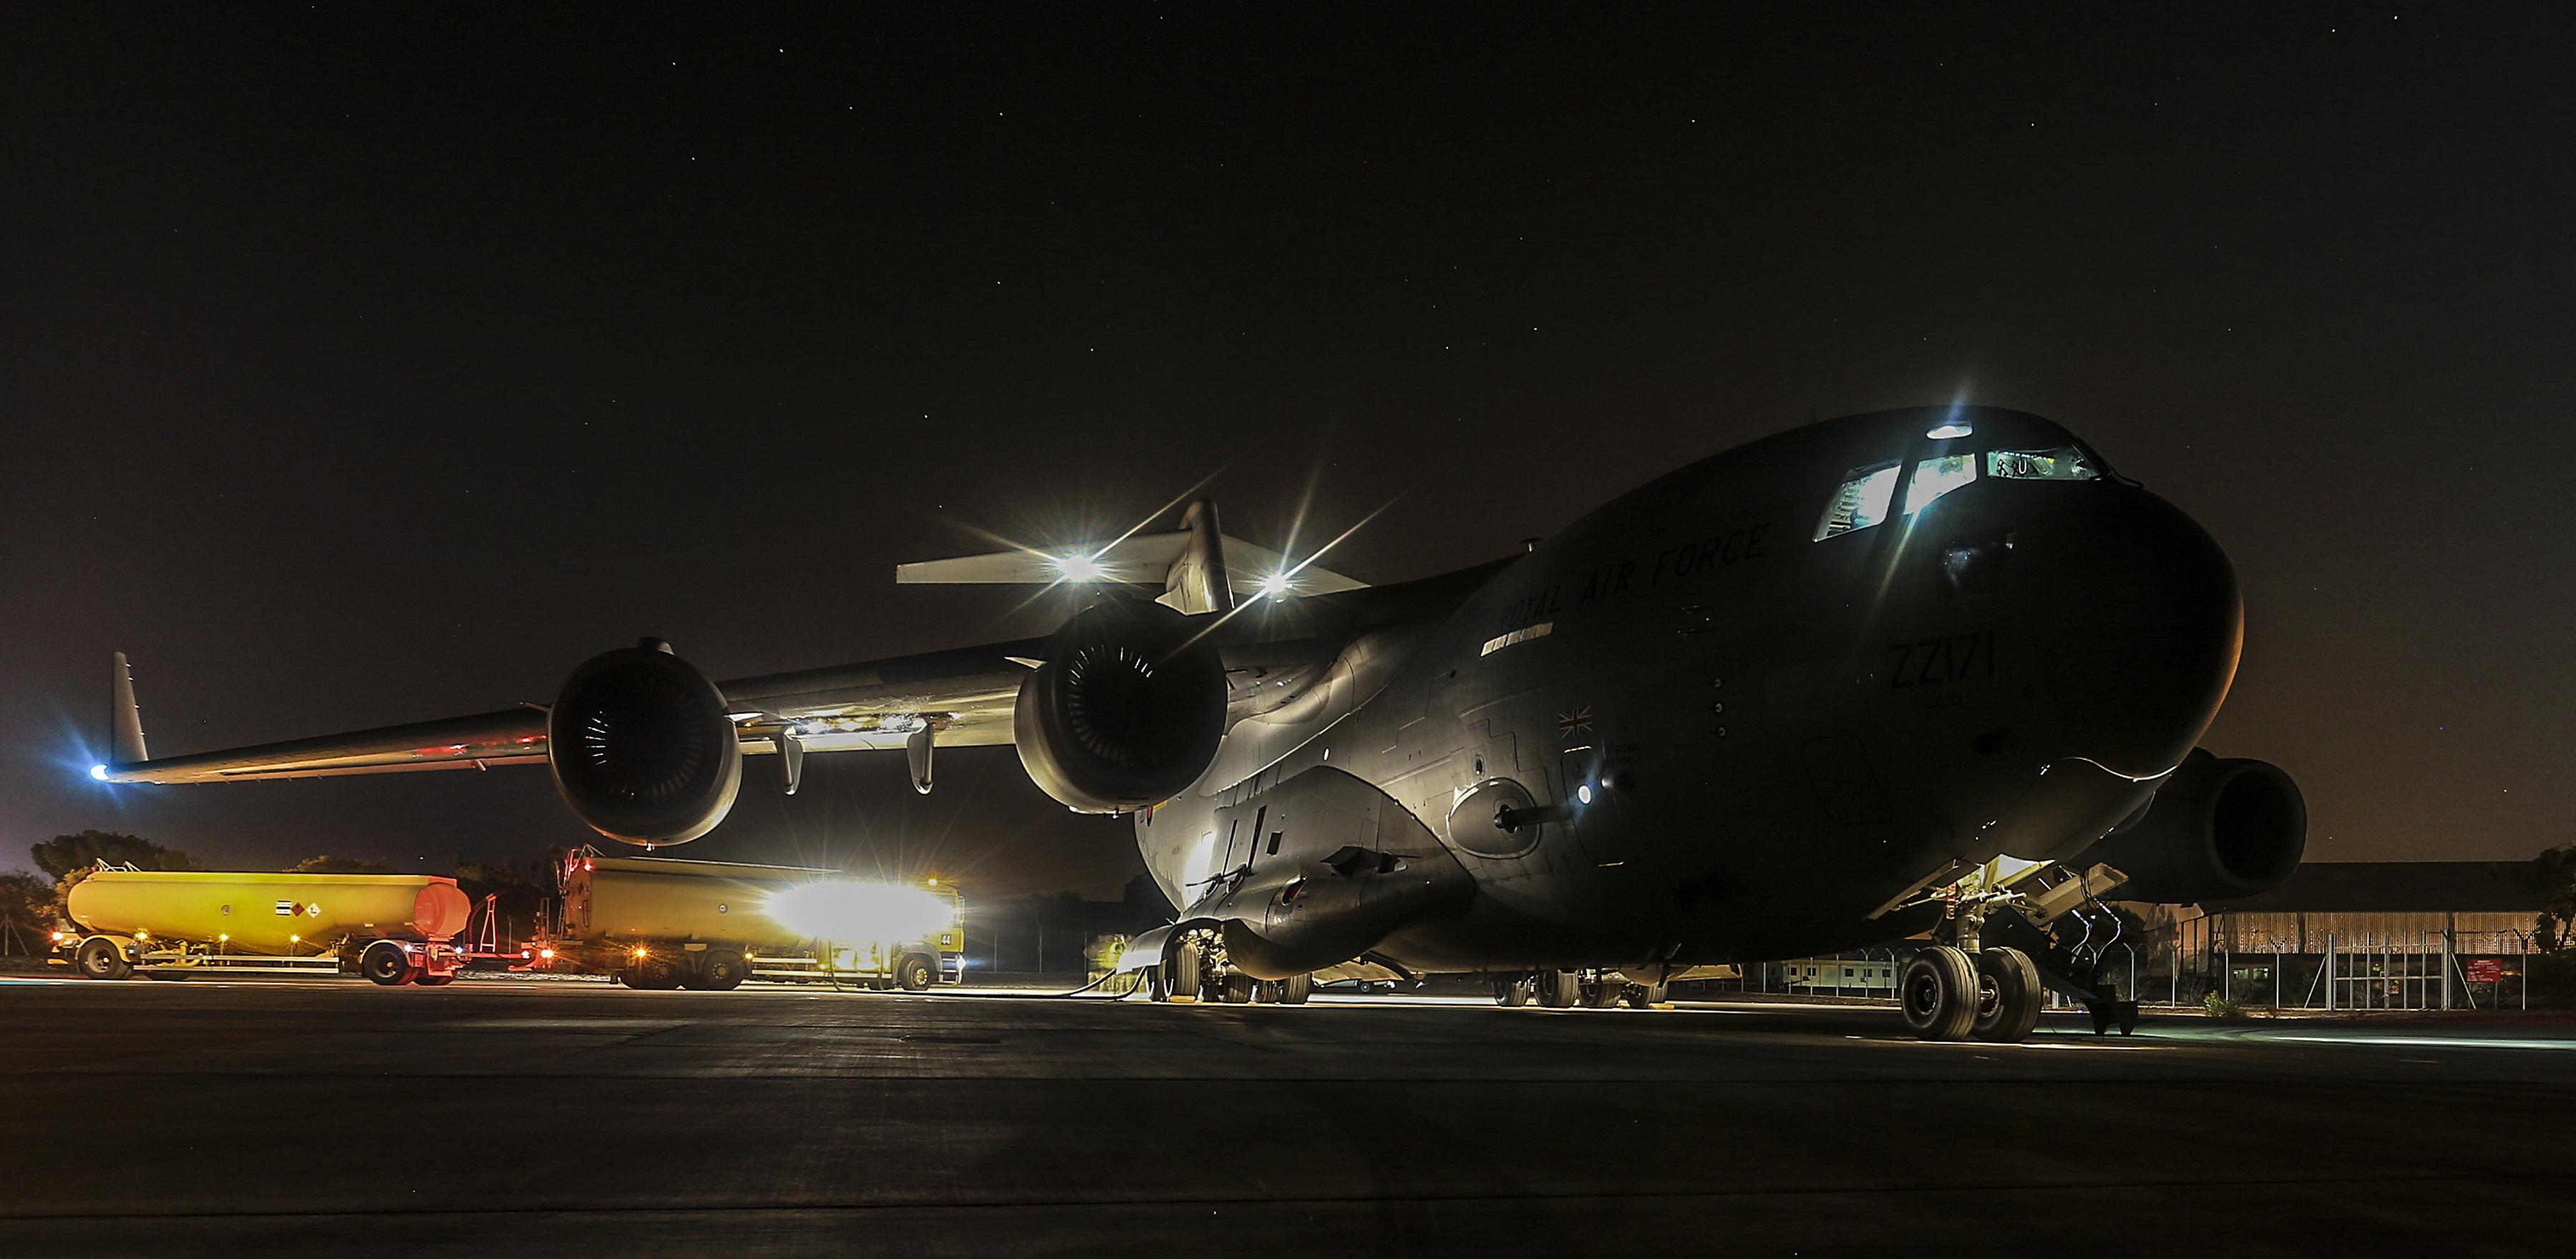 An RAF C17 Globemaster prepares to take off at night